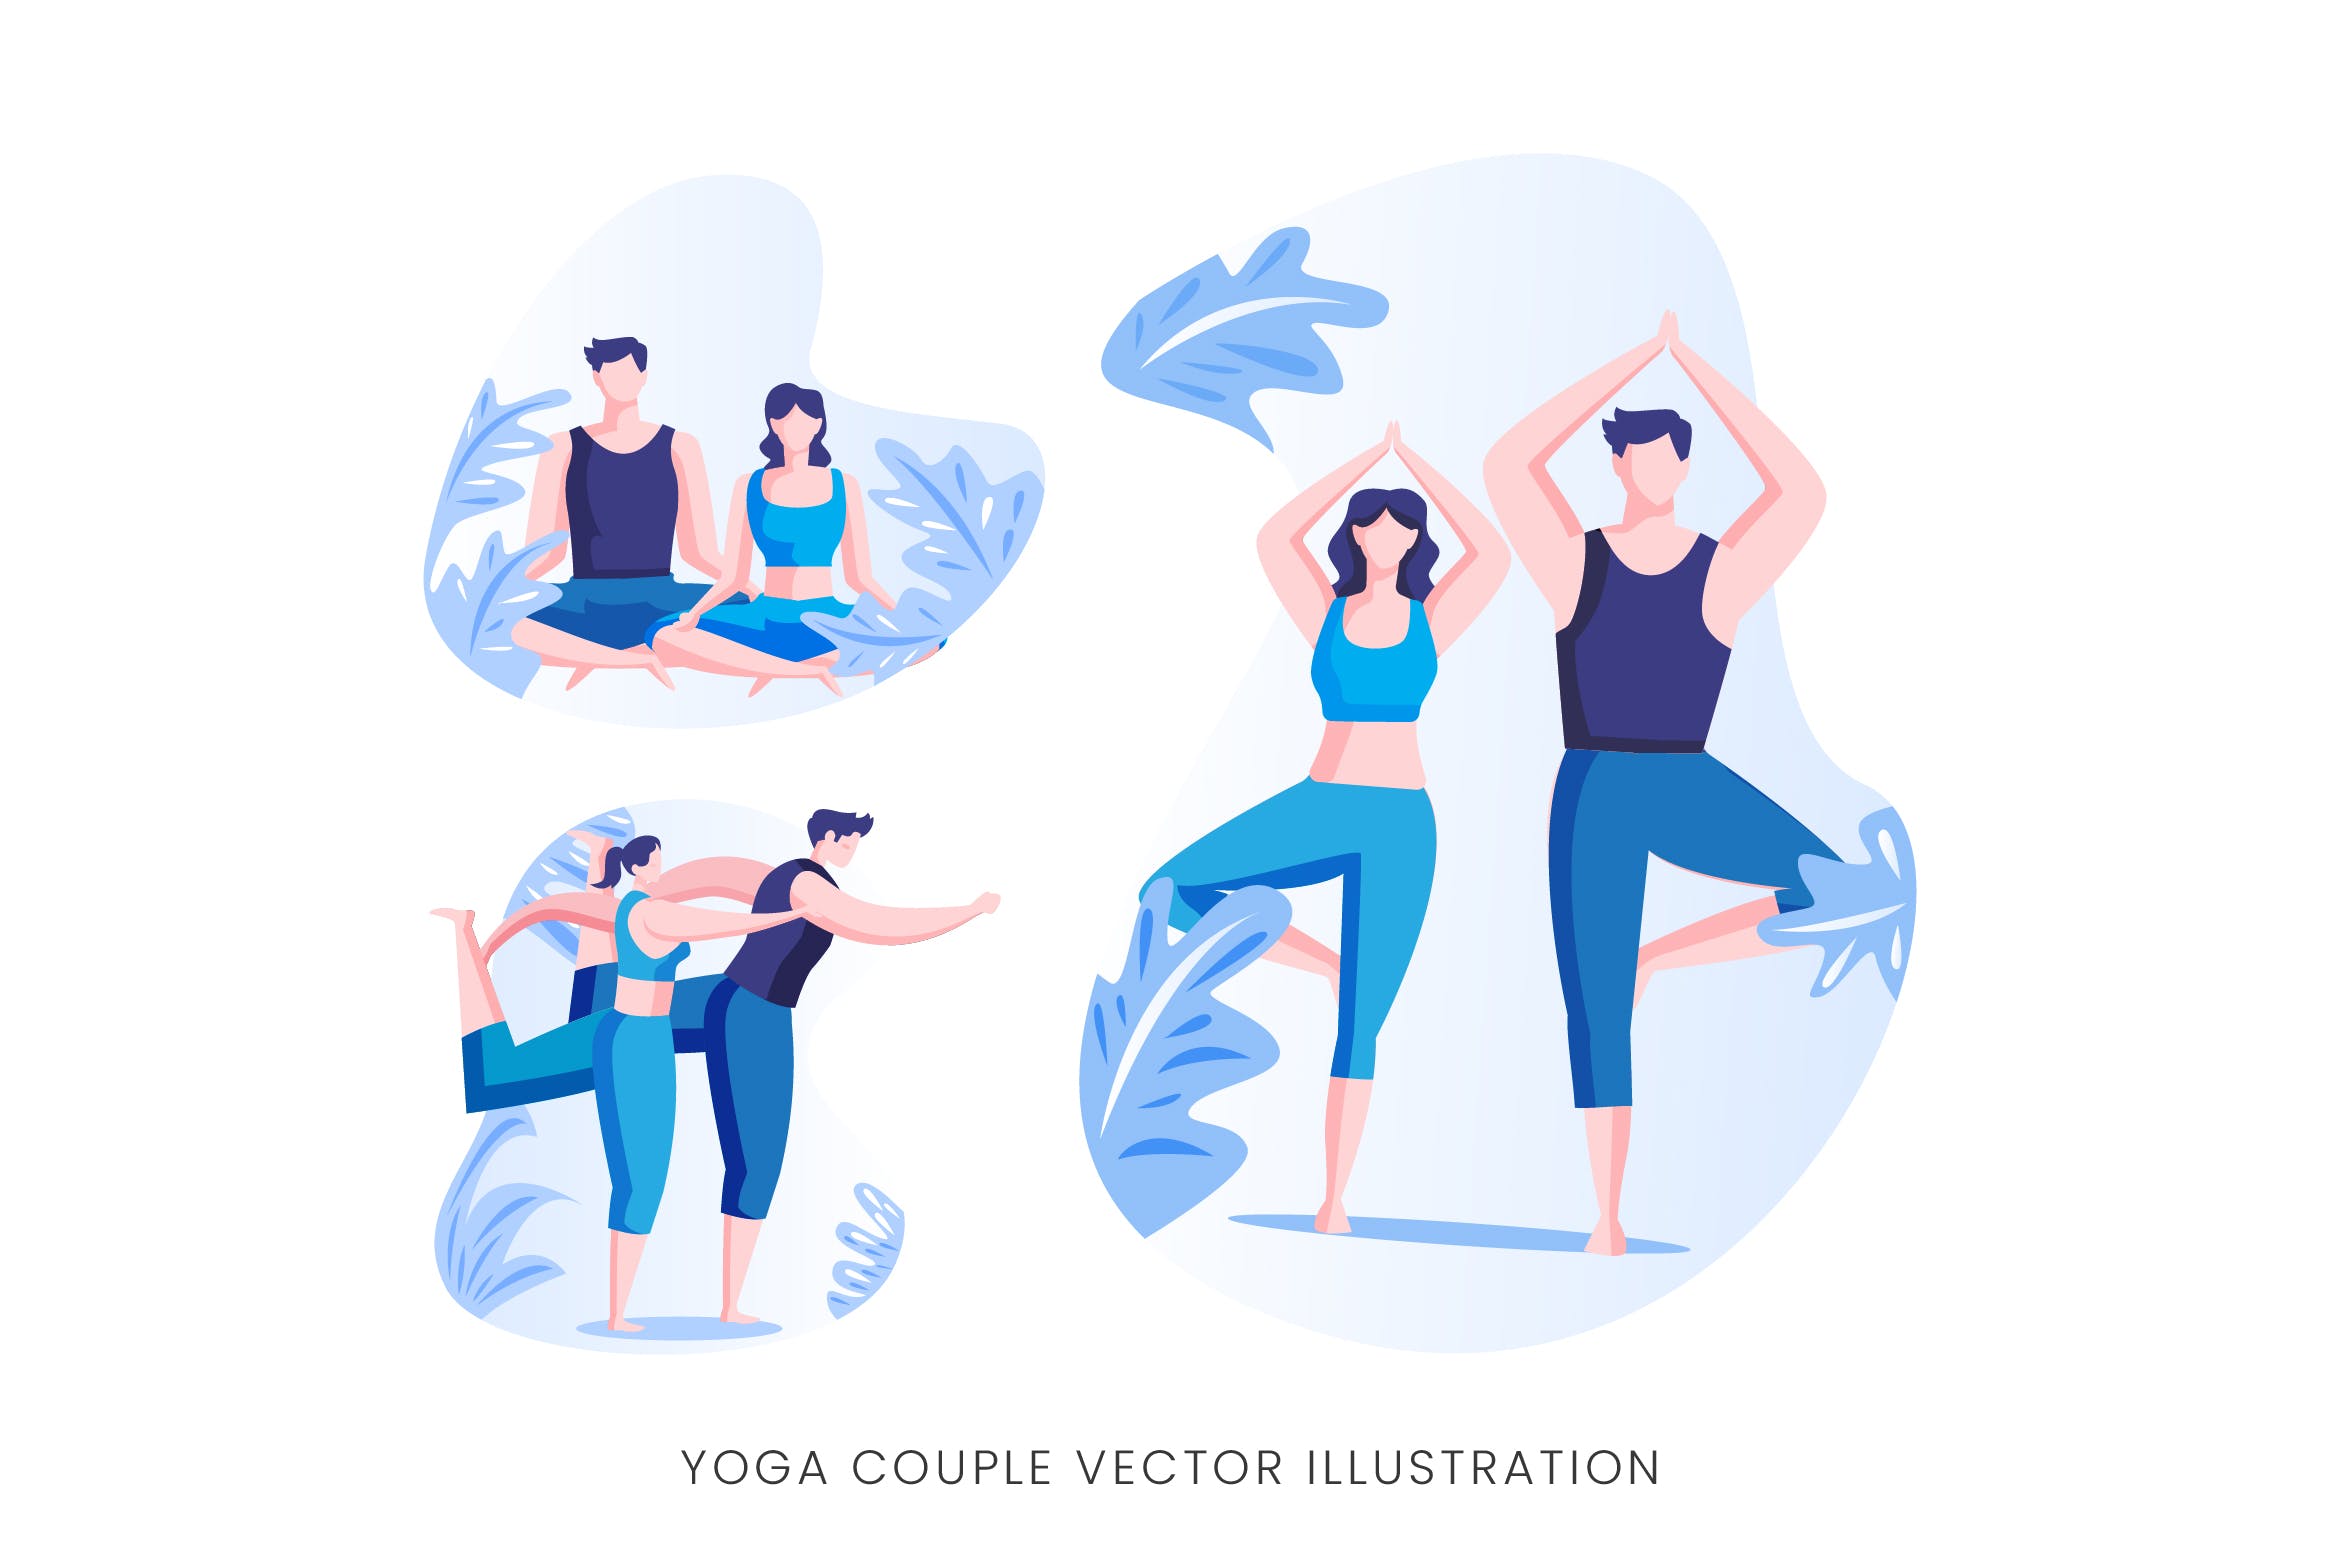 瑜珈情侣人物形象矢量手绘非凡图库精选设计素材 Yoga Couple Vector Character Set插图